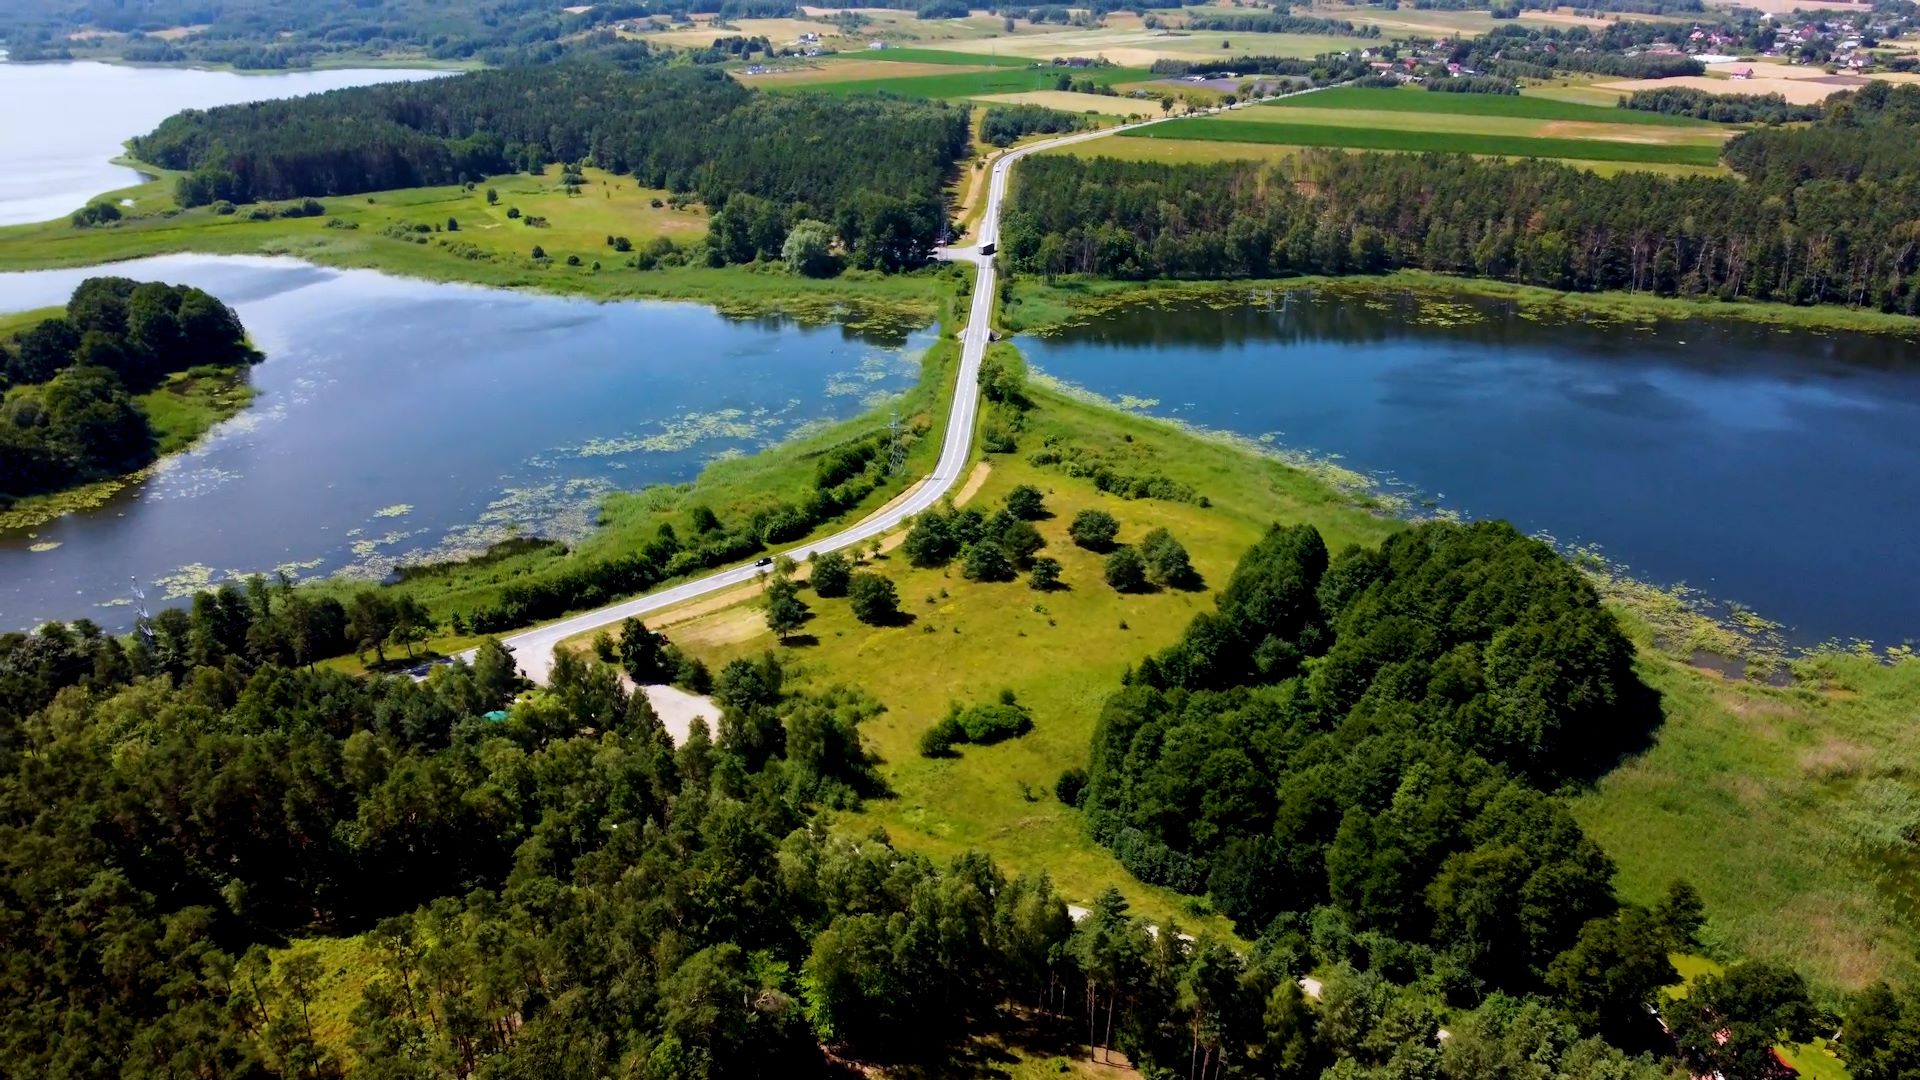 Widok z lotu ptaka na wąską drogę wijącą się przez bujny zielony krajobraz z jeziorami po obu stronach.